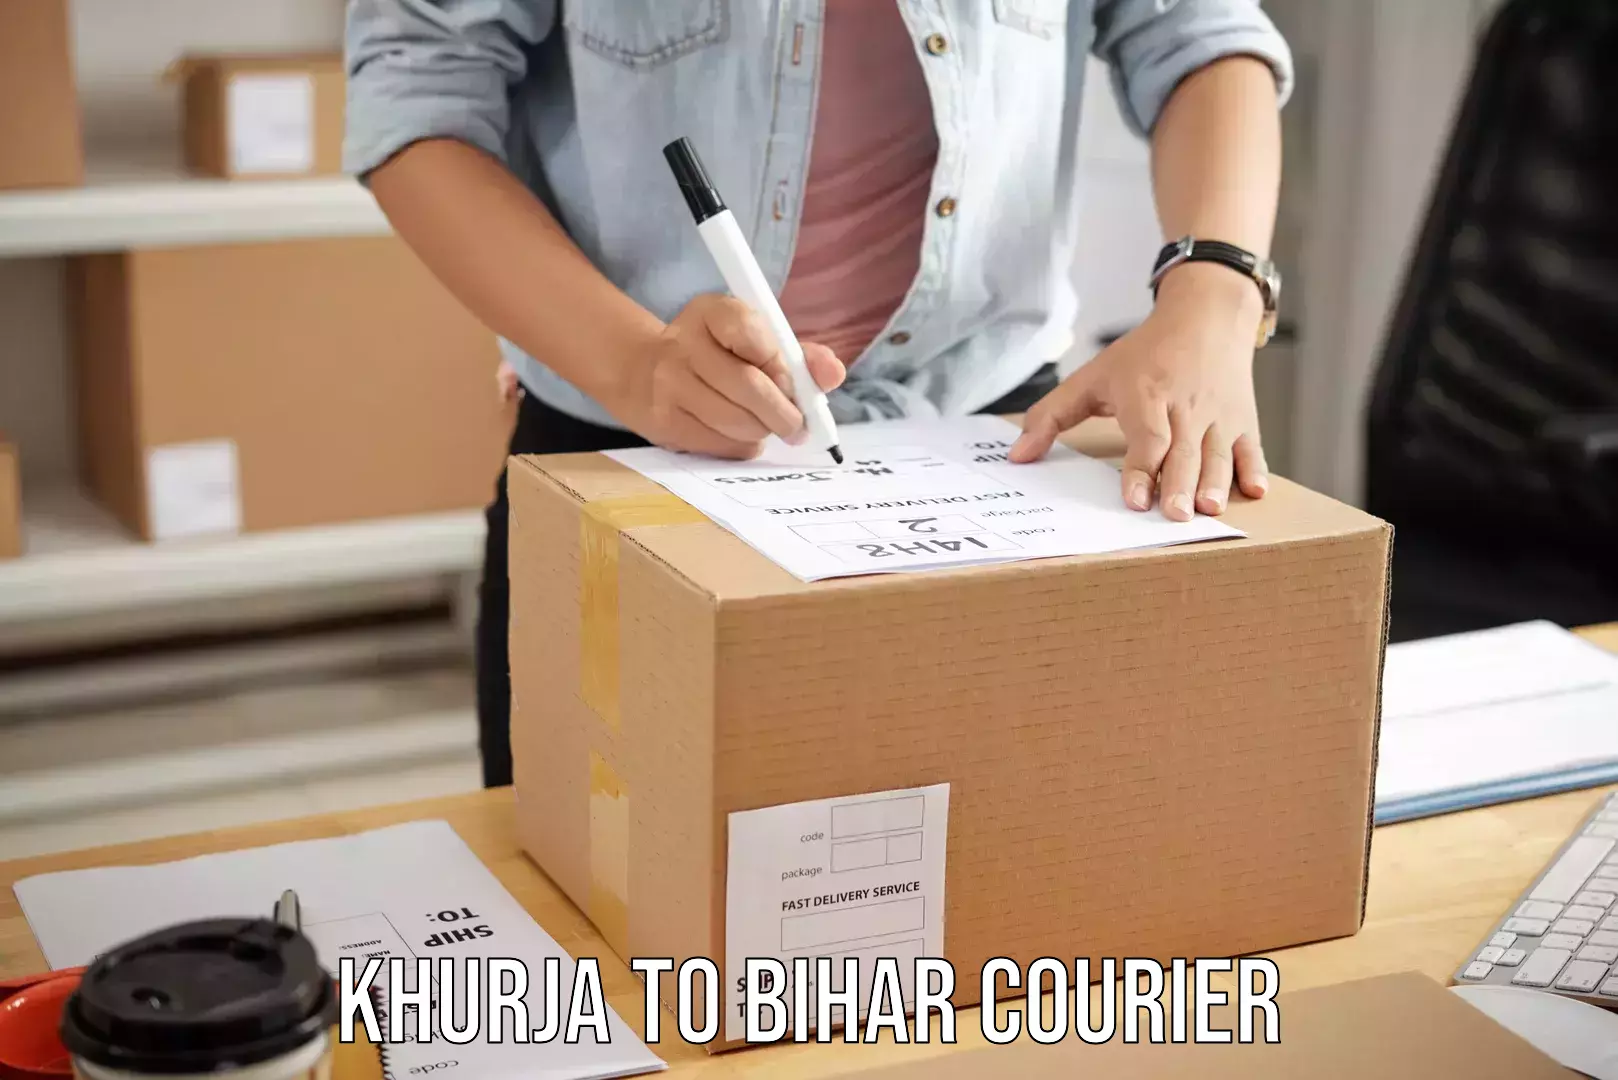 Door-to-door baggage service Khurja to Bihar